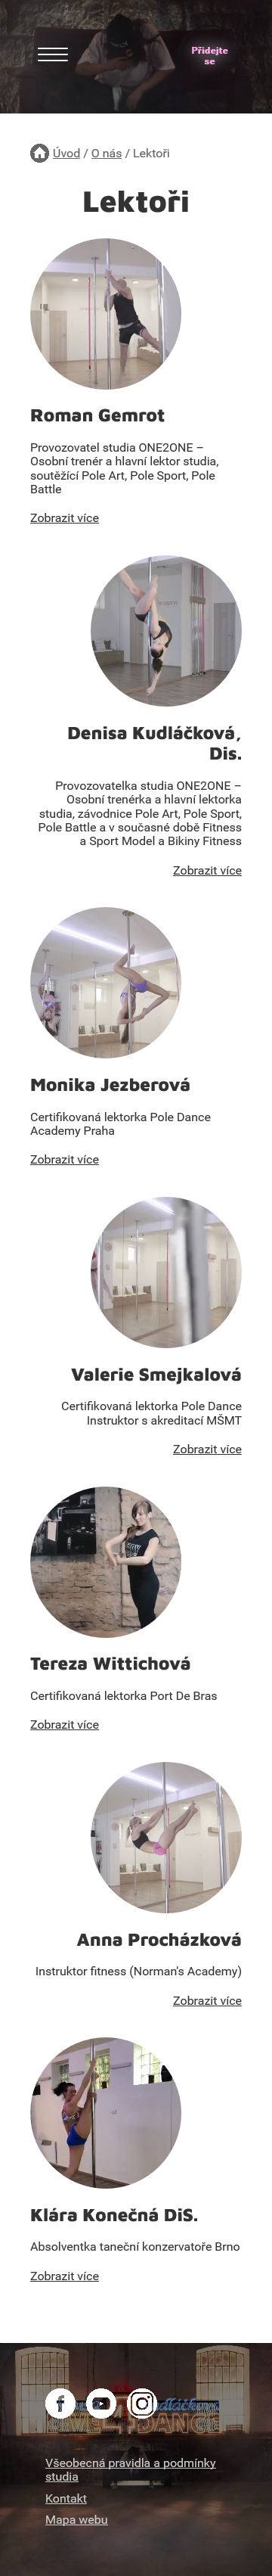 Tvorba nového webu one2onestudio.cz - Screenshot mobilní verze